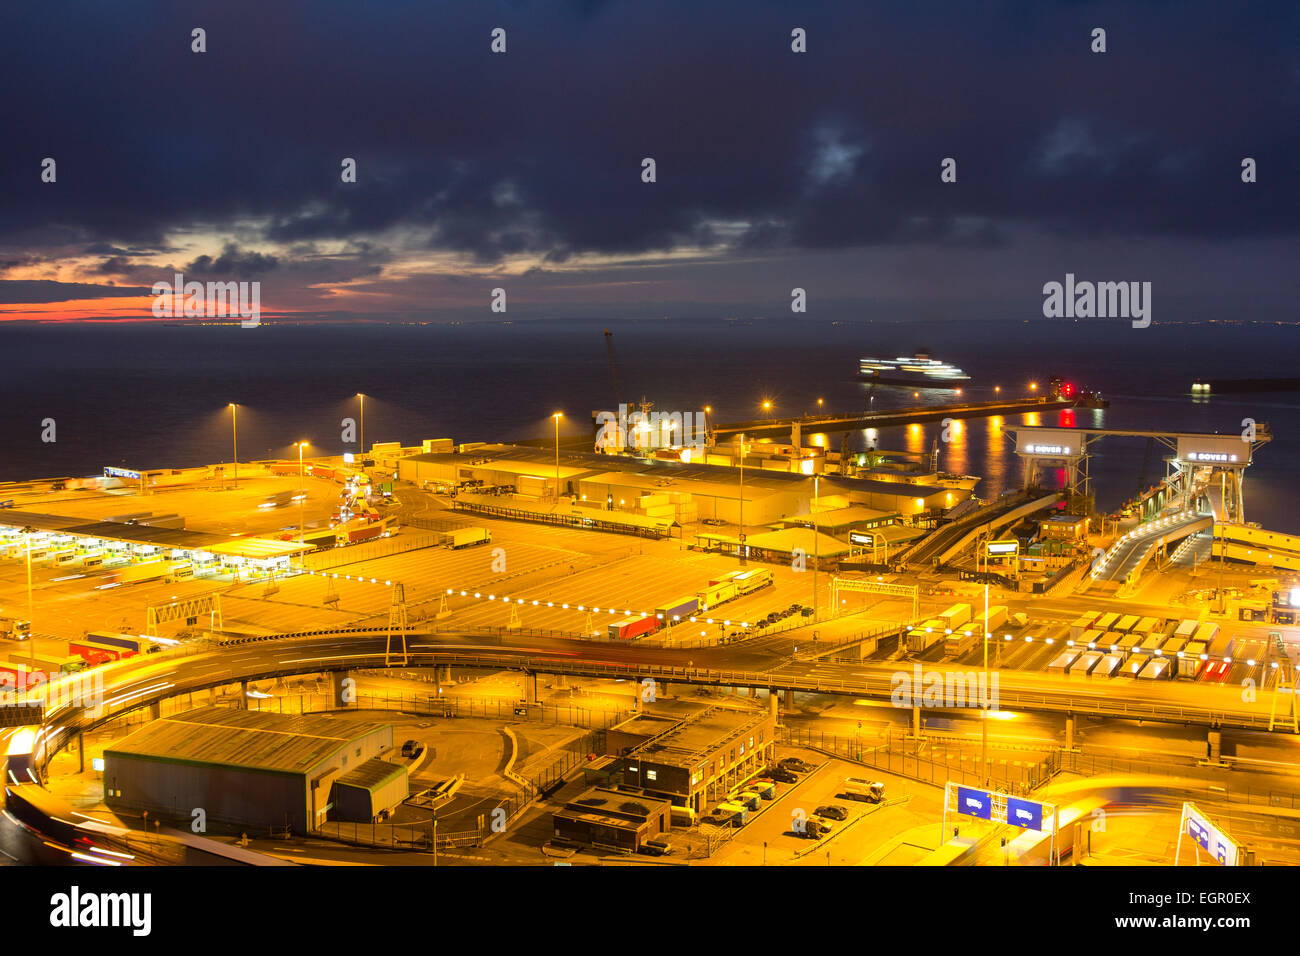 Scena notturna con l'alba che inizia al terminal dei traghetti illuminati presso il porto del canale inglese di dover. Vista ad alto angolo del porto. Foto Stock